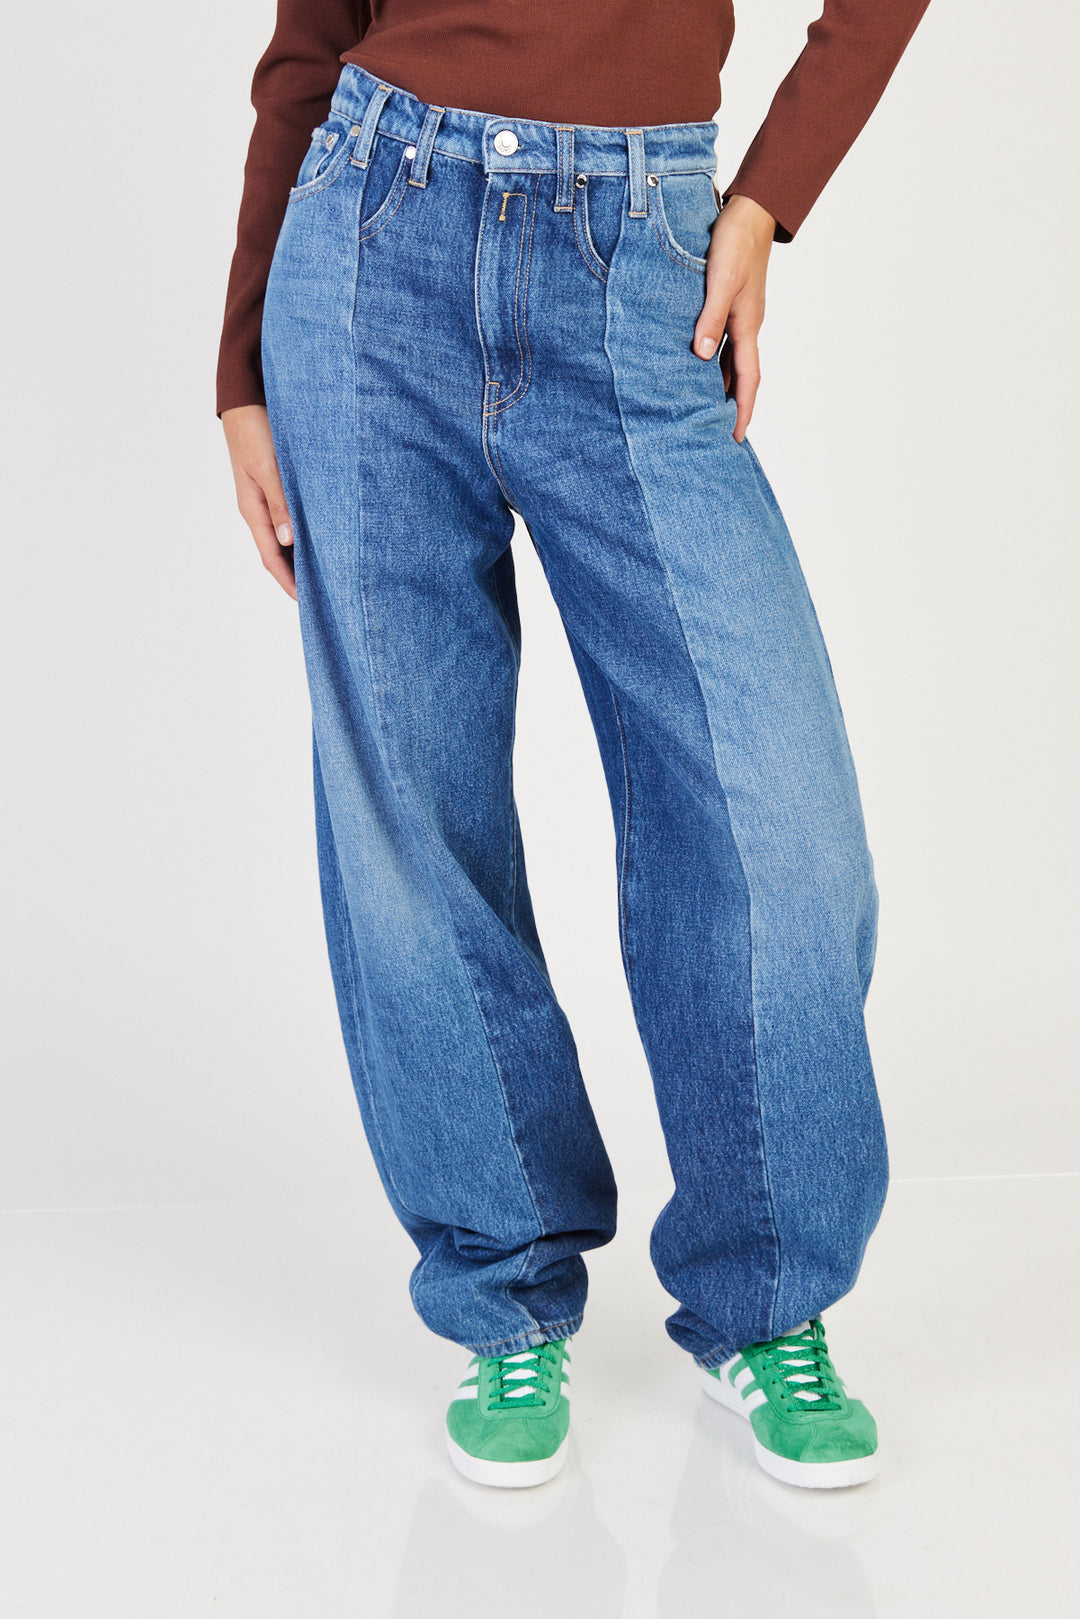 ג'ינס Pantaloni Wide Leg בצבע כחול